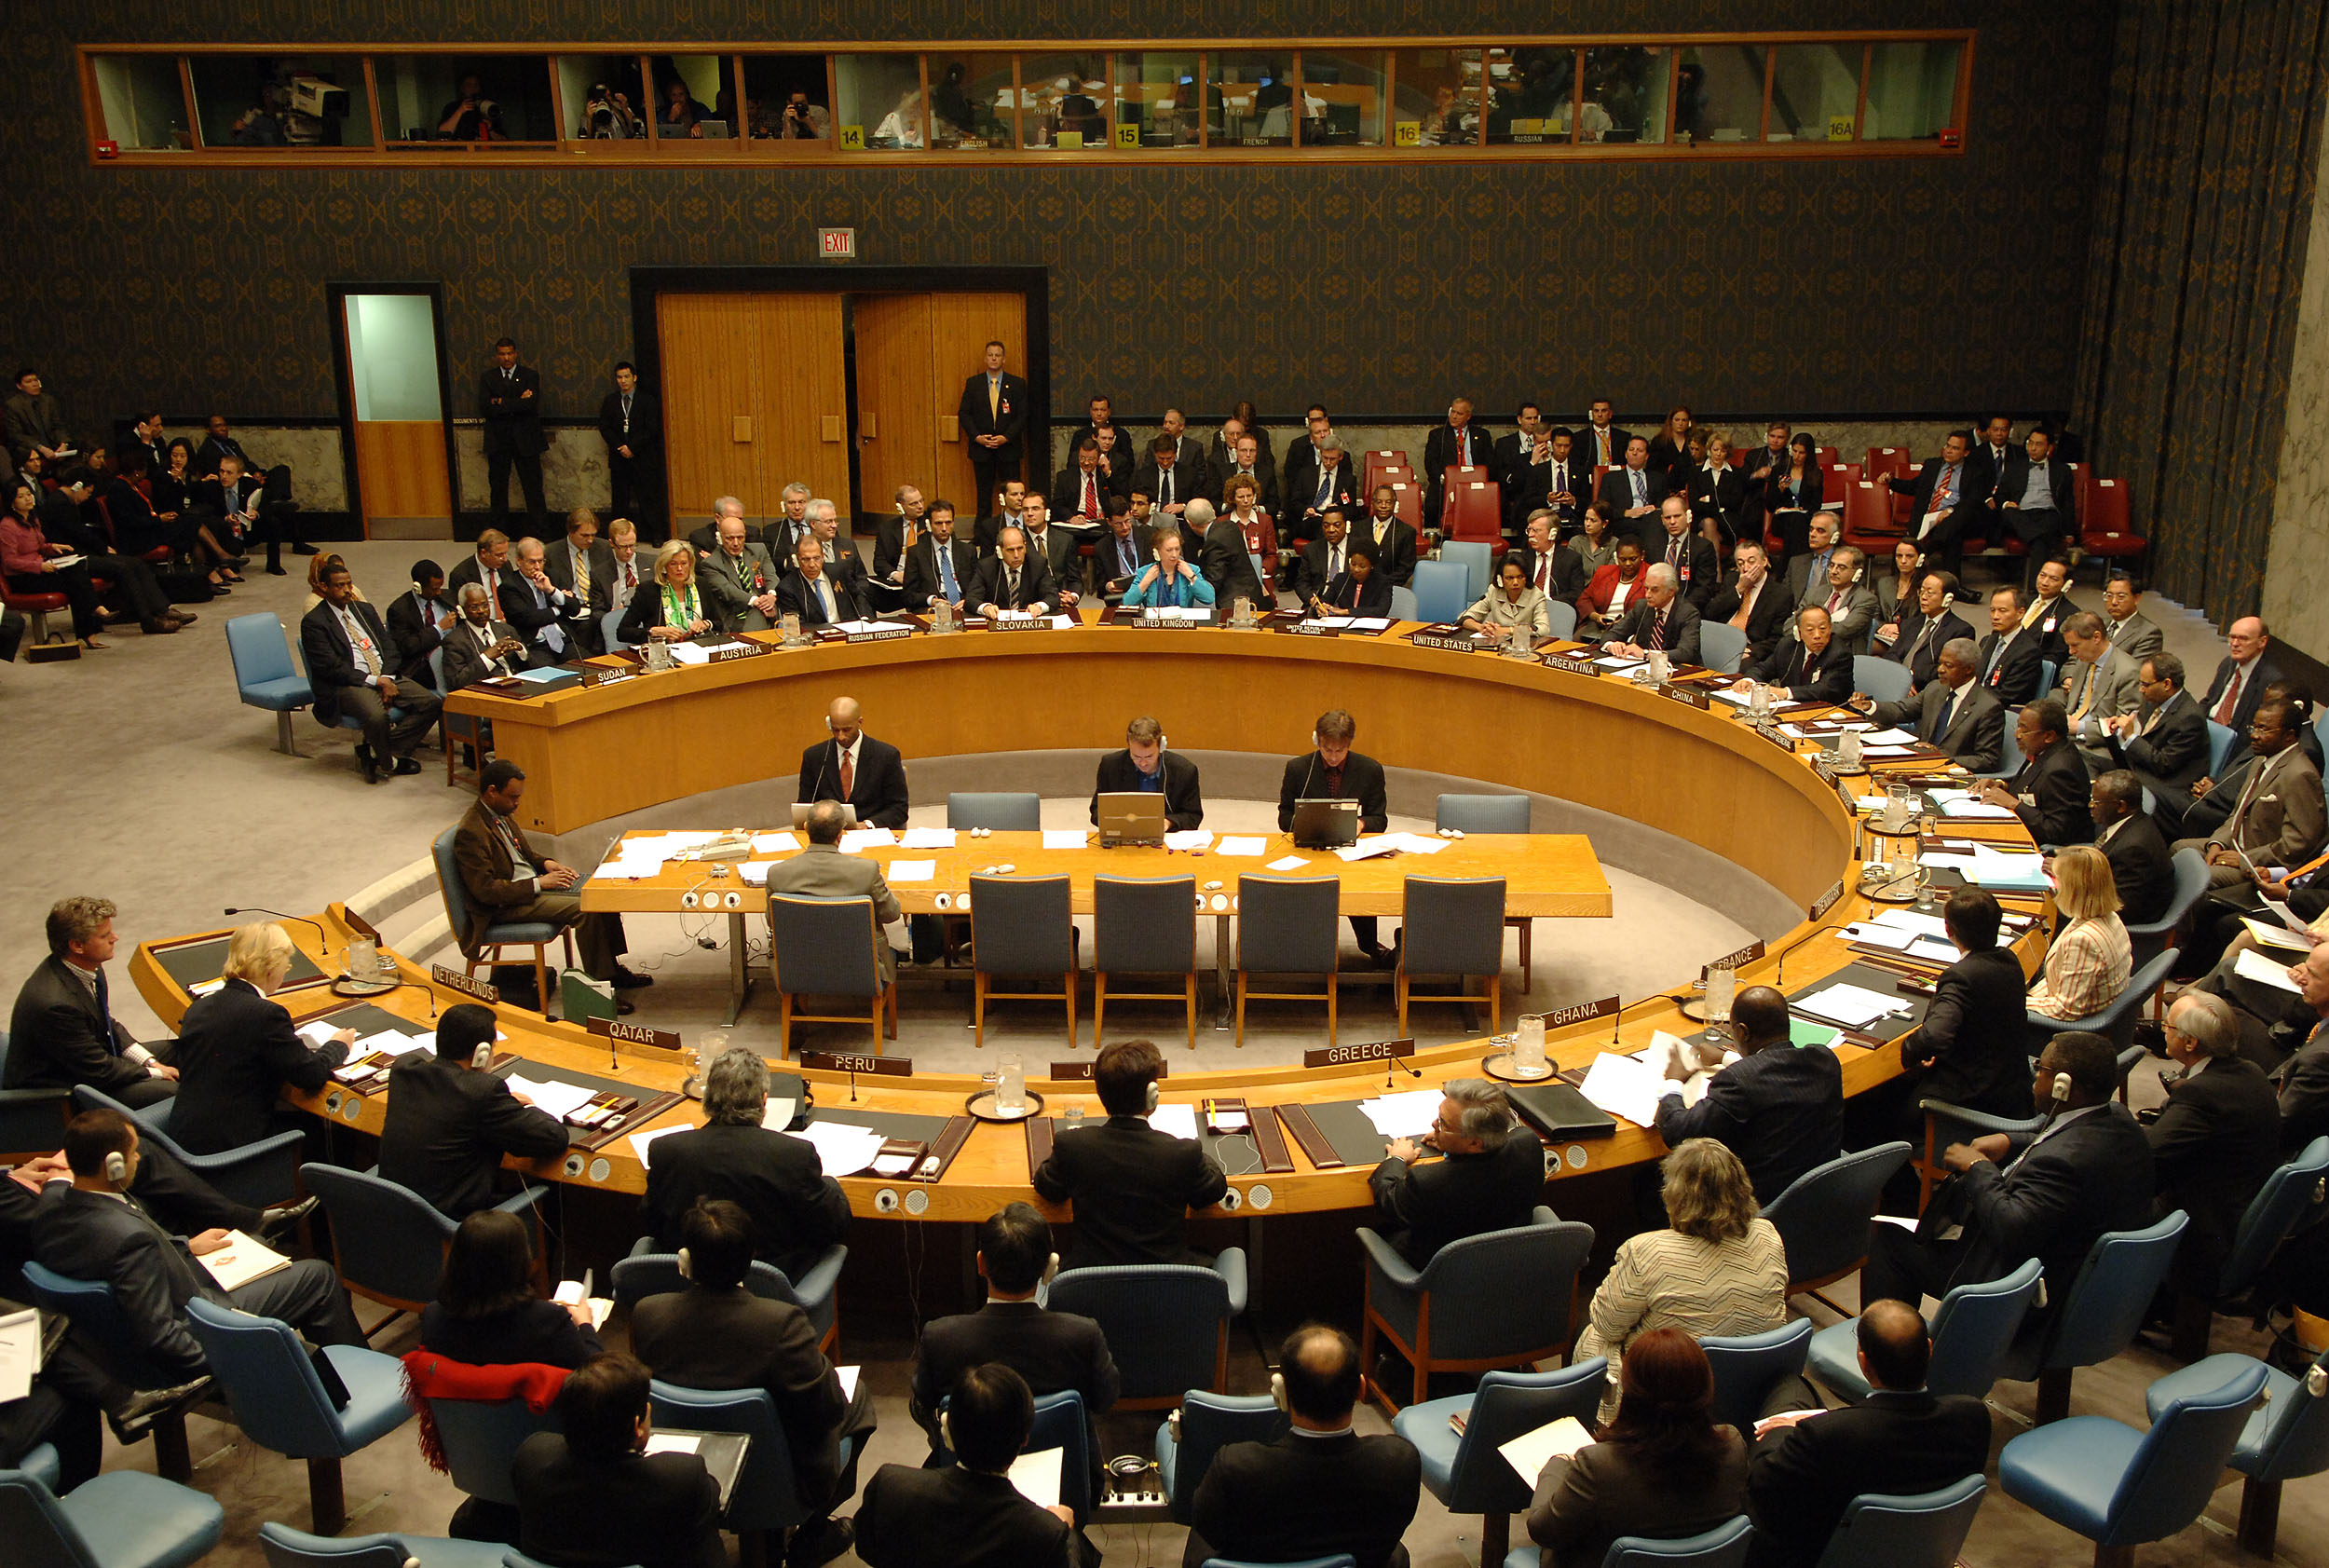   مجلس الأمن يعقد جلسة مغلقة لبحث الوضع فى ليبيا الأربعاء المقبل